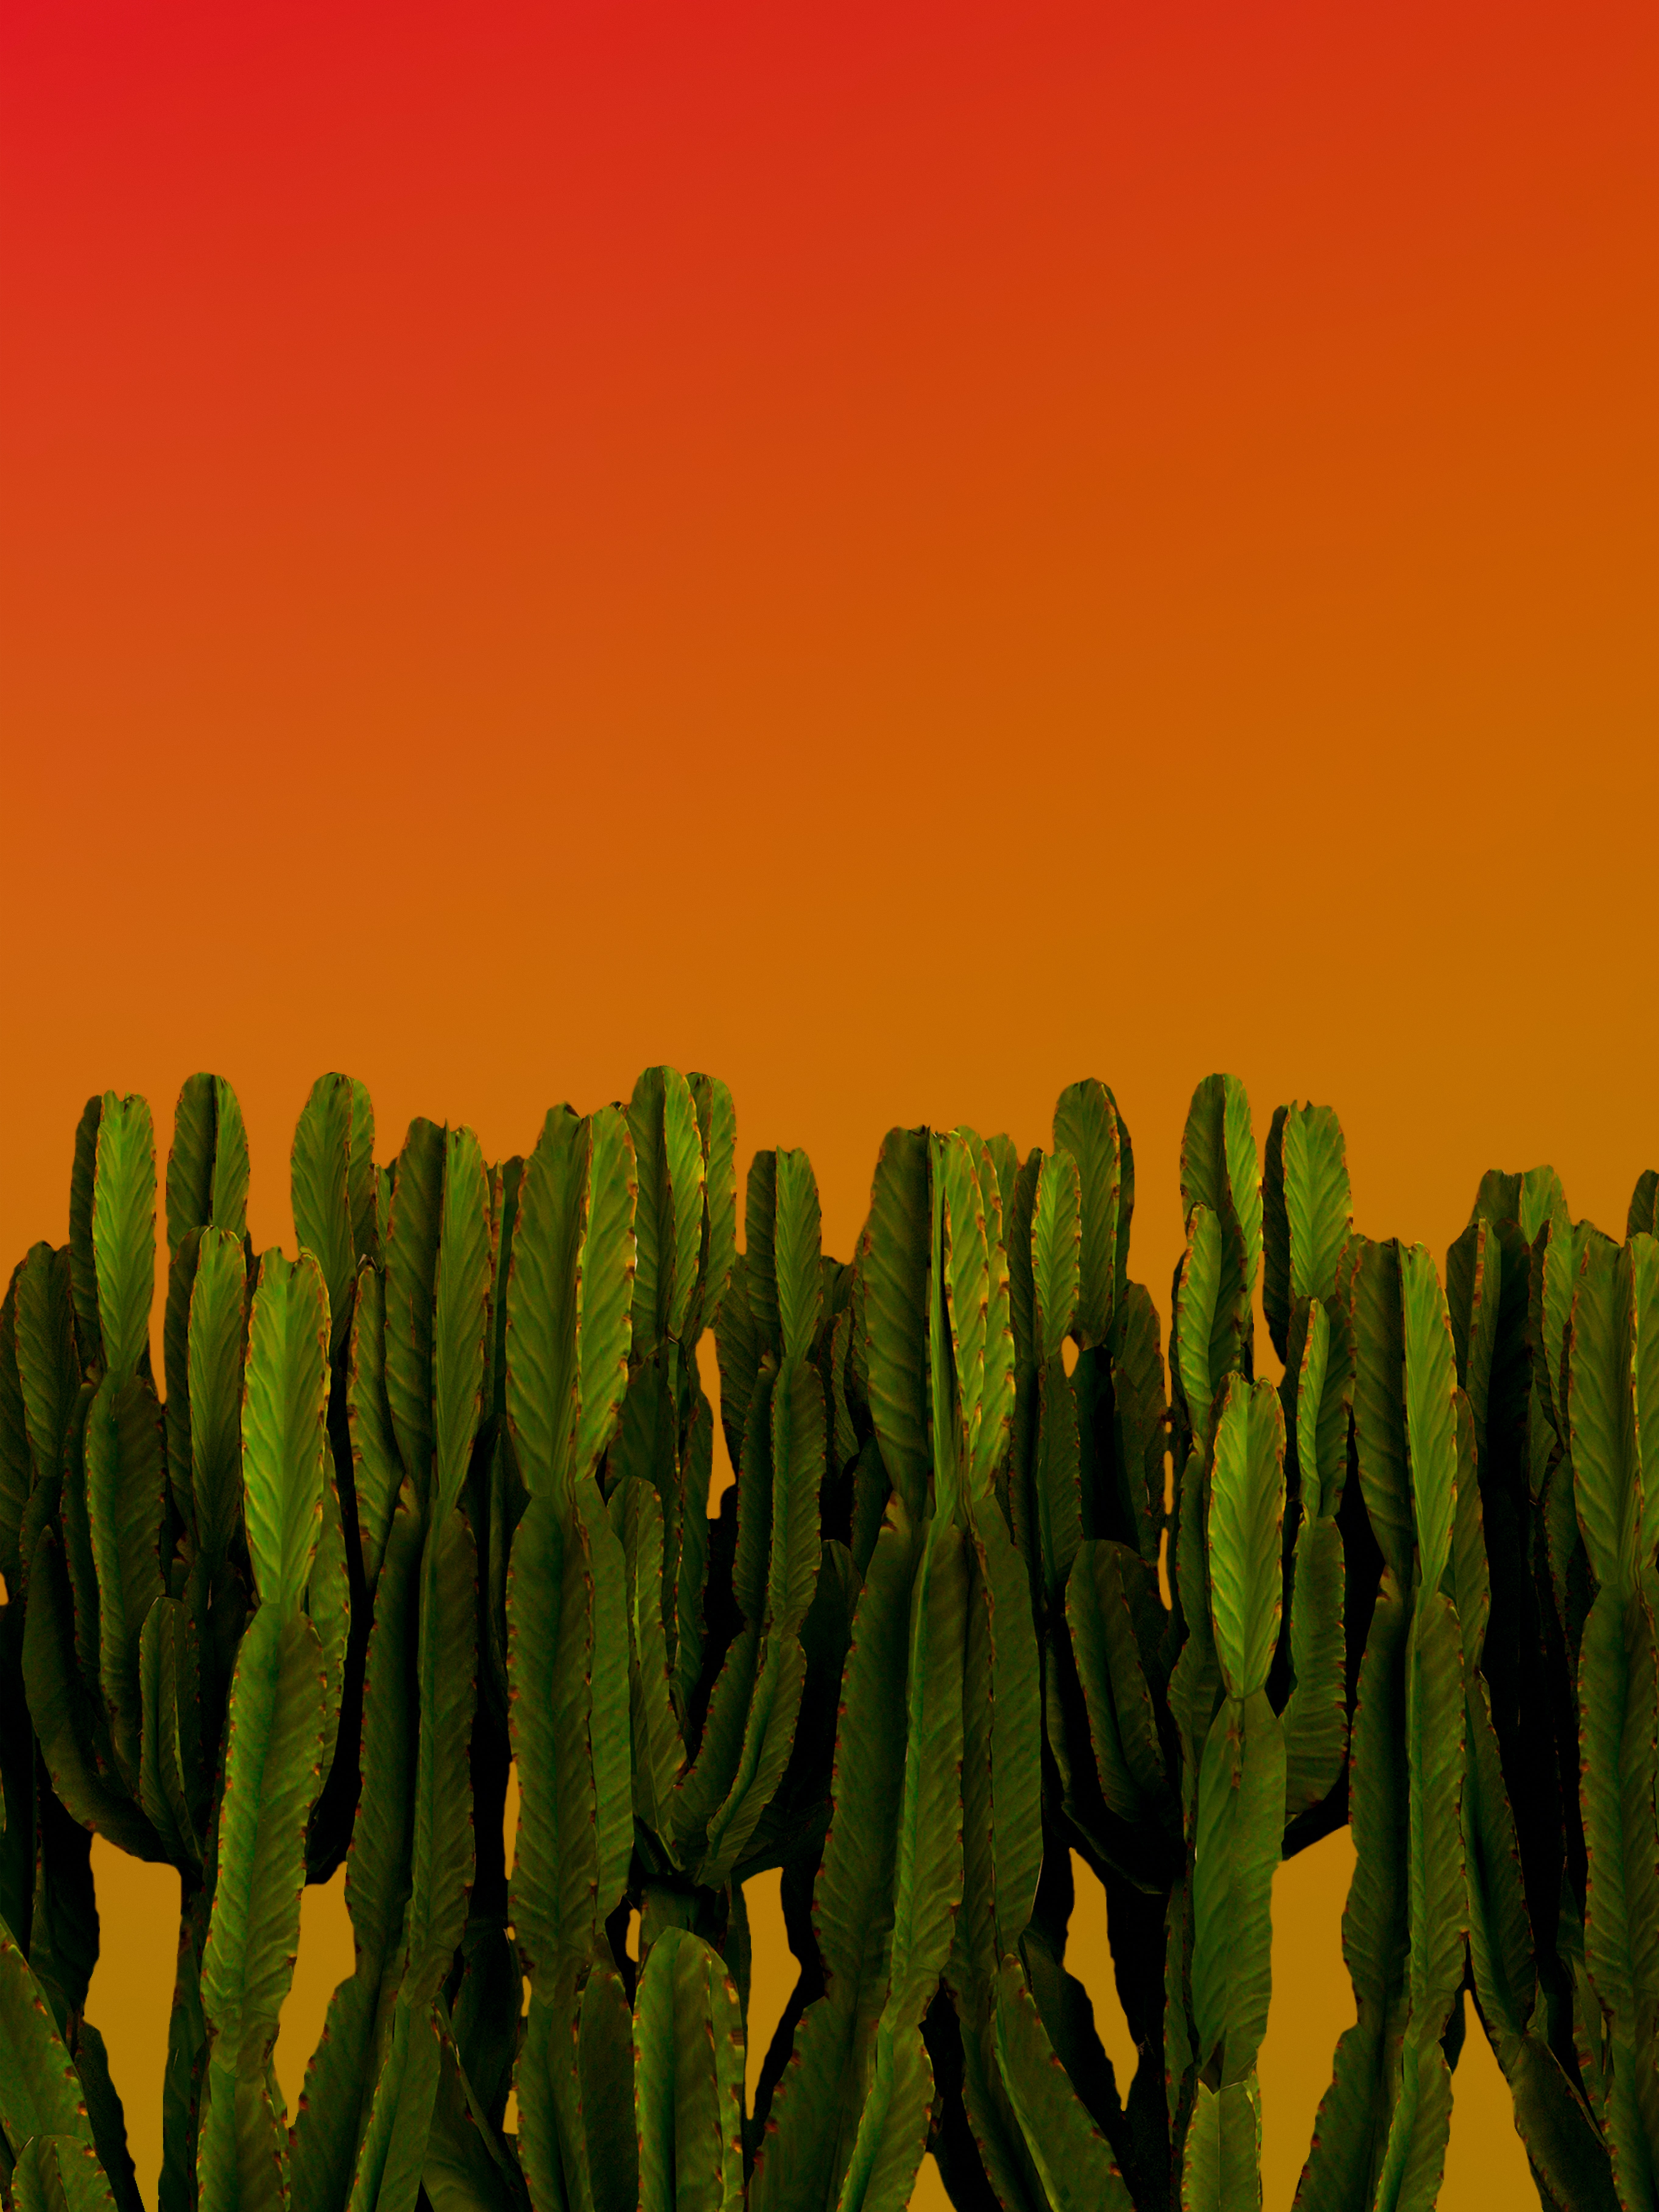 Fondos de pantalla de Cactus para escritorio, descarga gratis imágenes y  fondos de Cactus para PC 